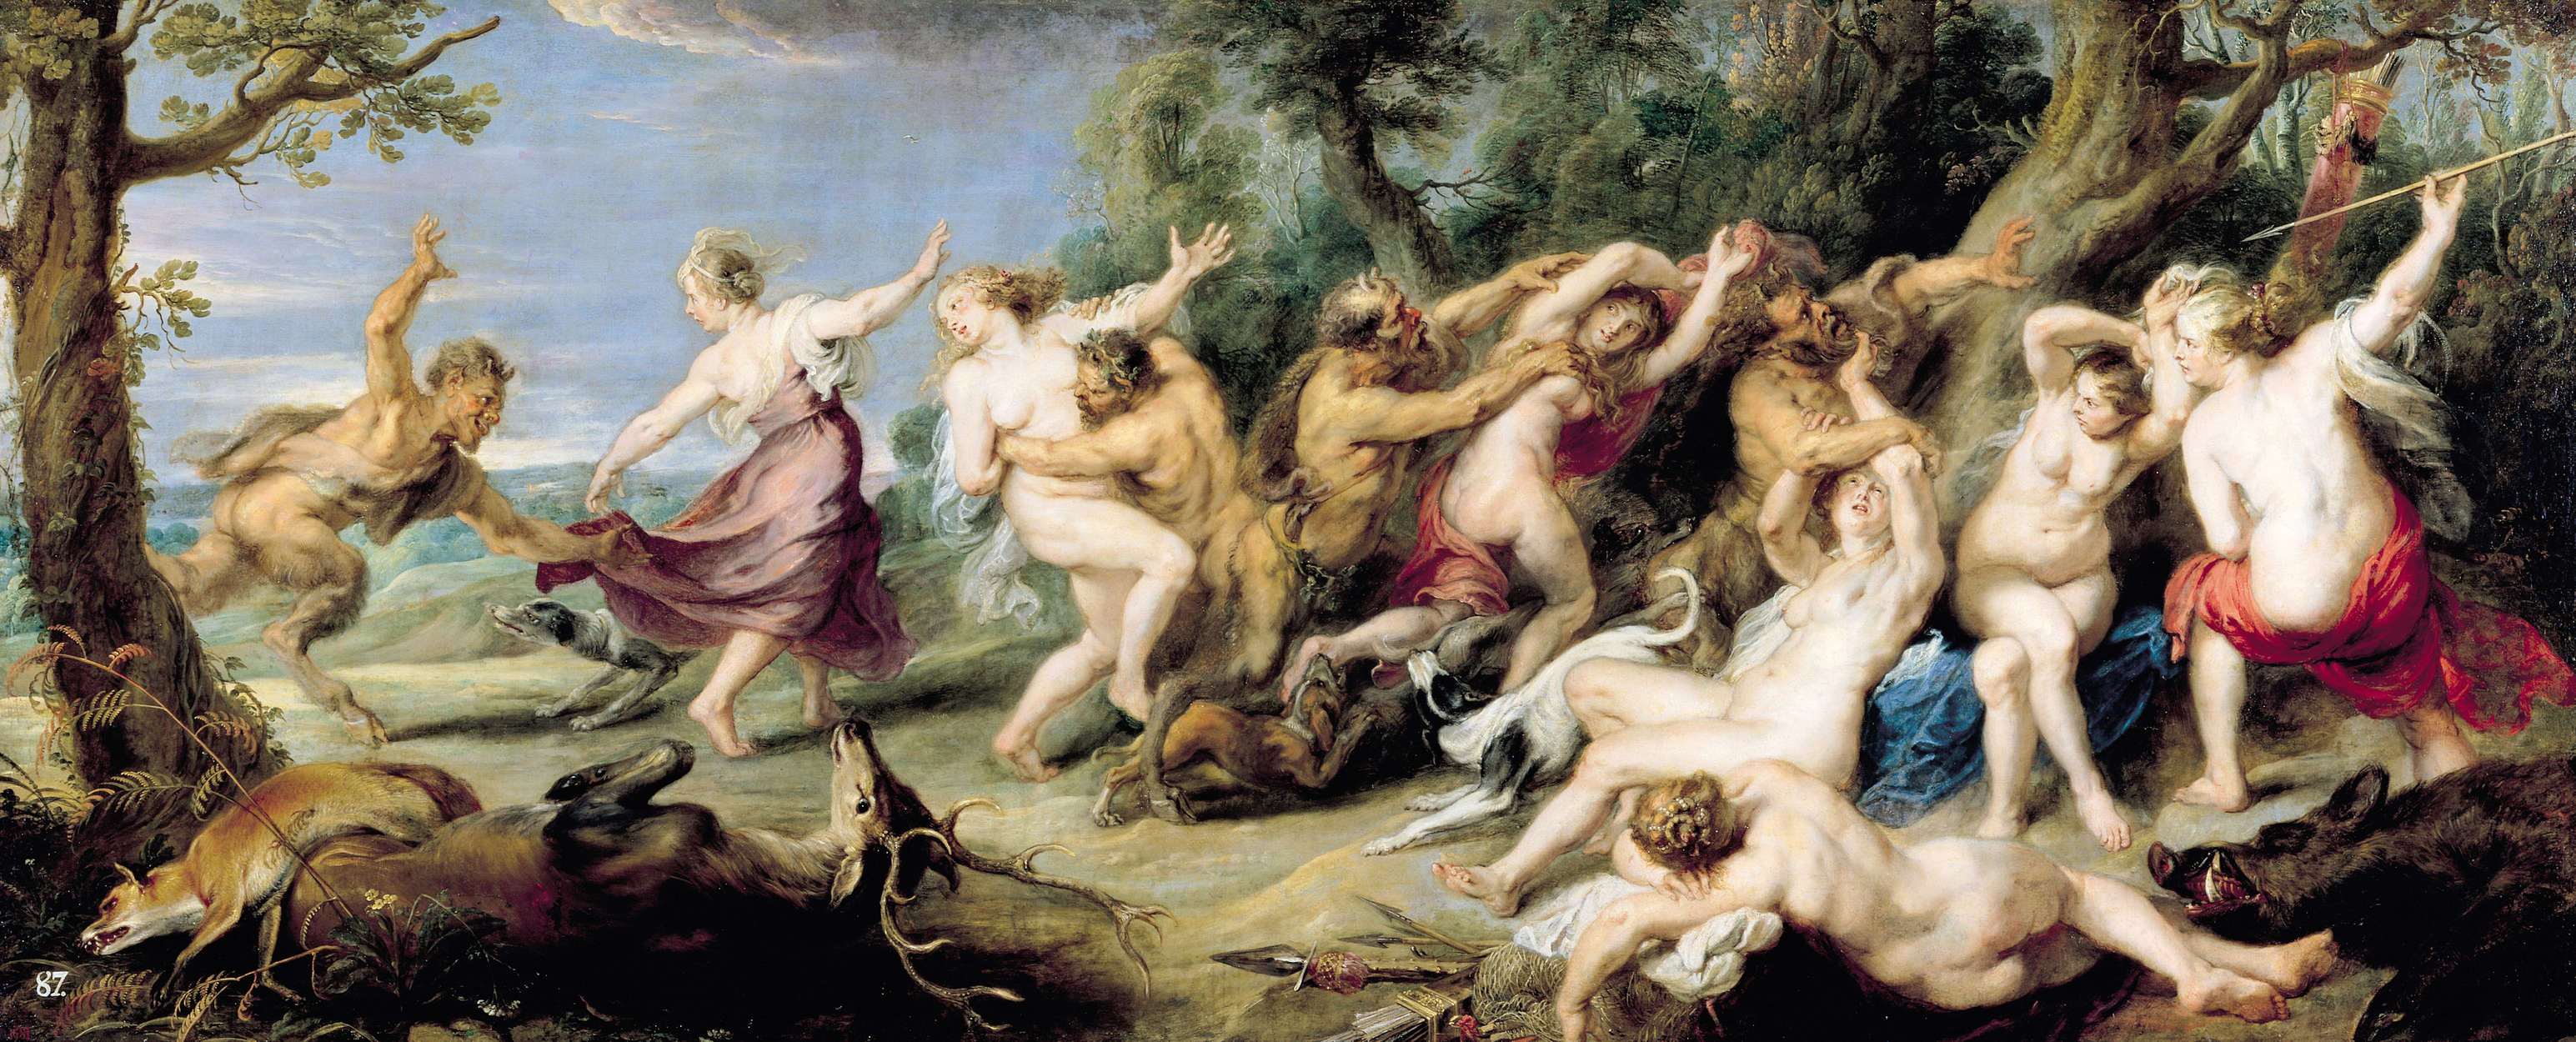             Mural "Diana y sus ninfas a la caza" de Peter Paul Rubens
        